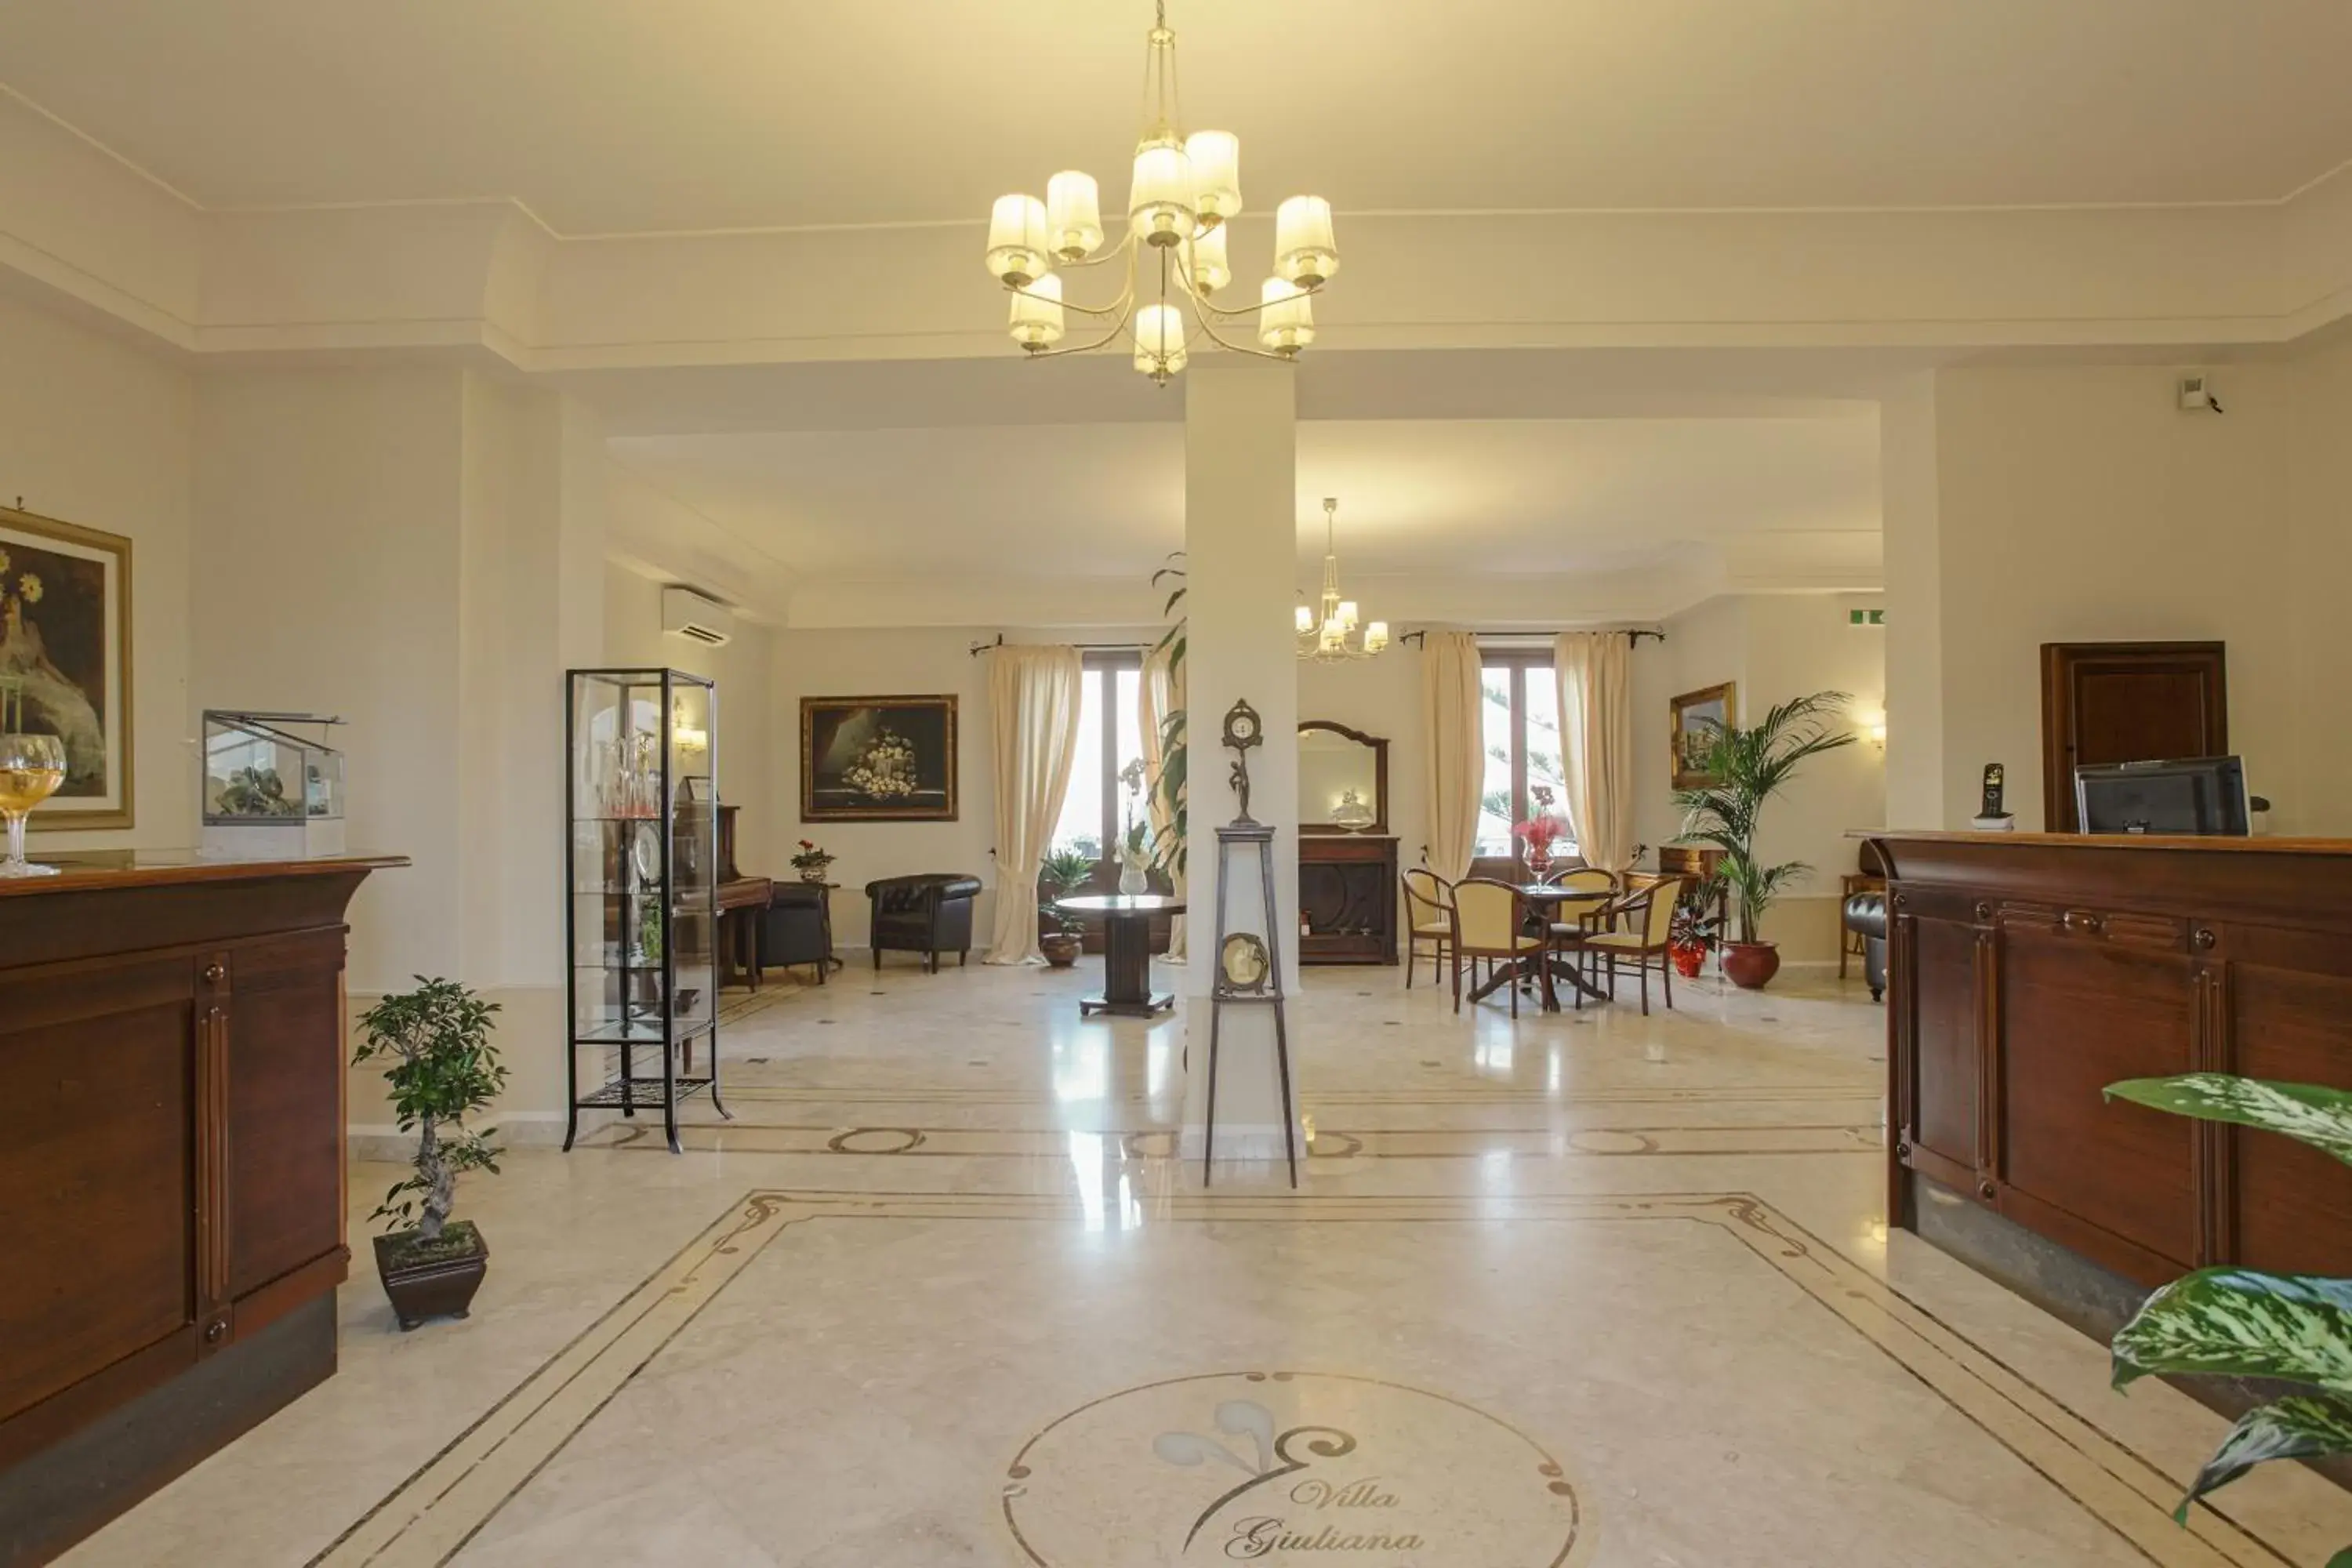 Lobby or reception in Relais Villa Giuliana